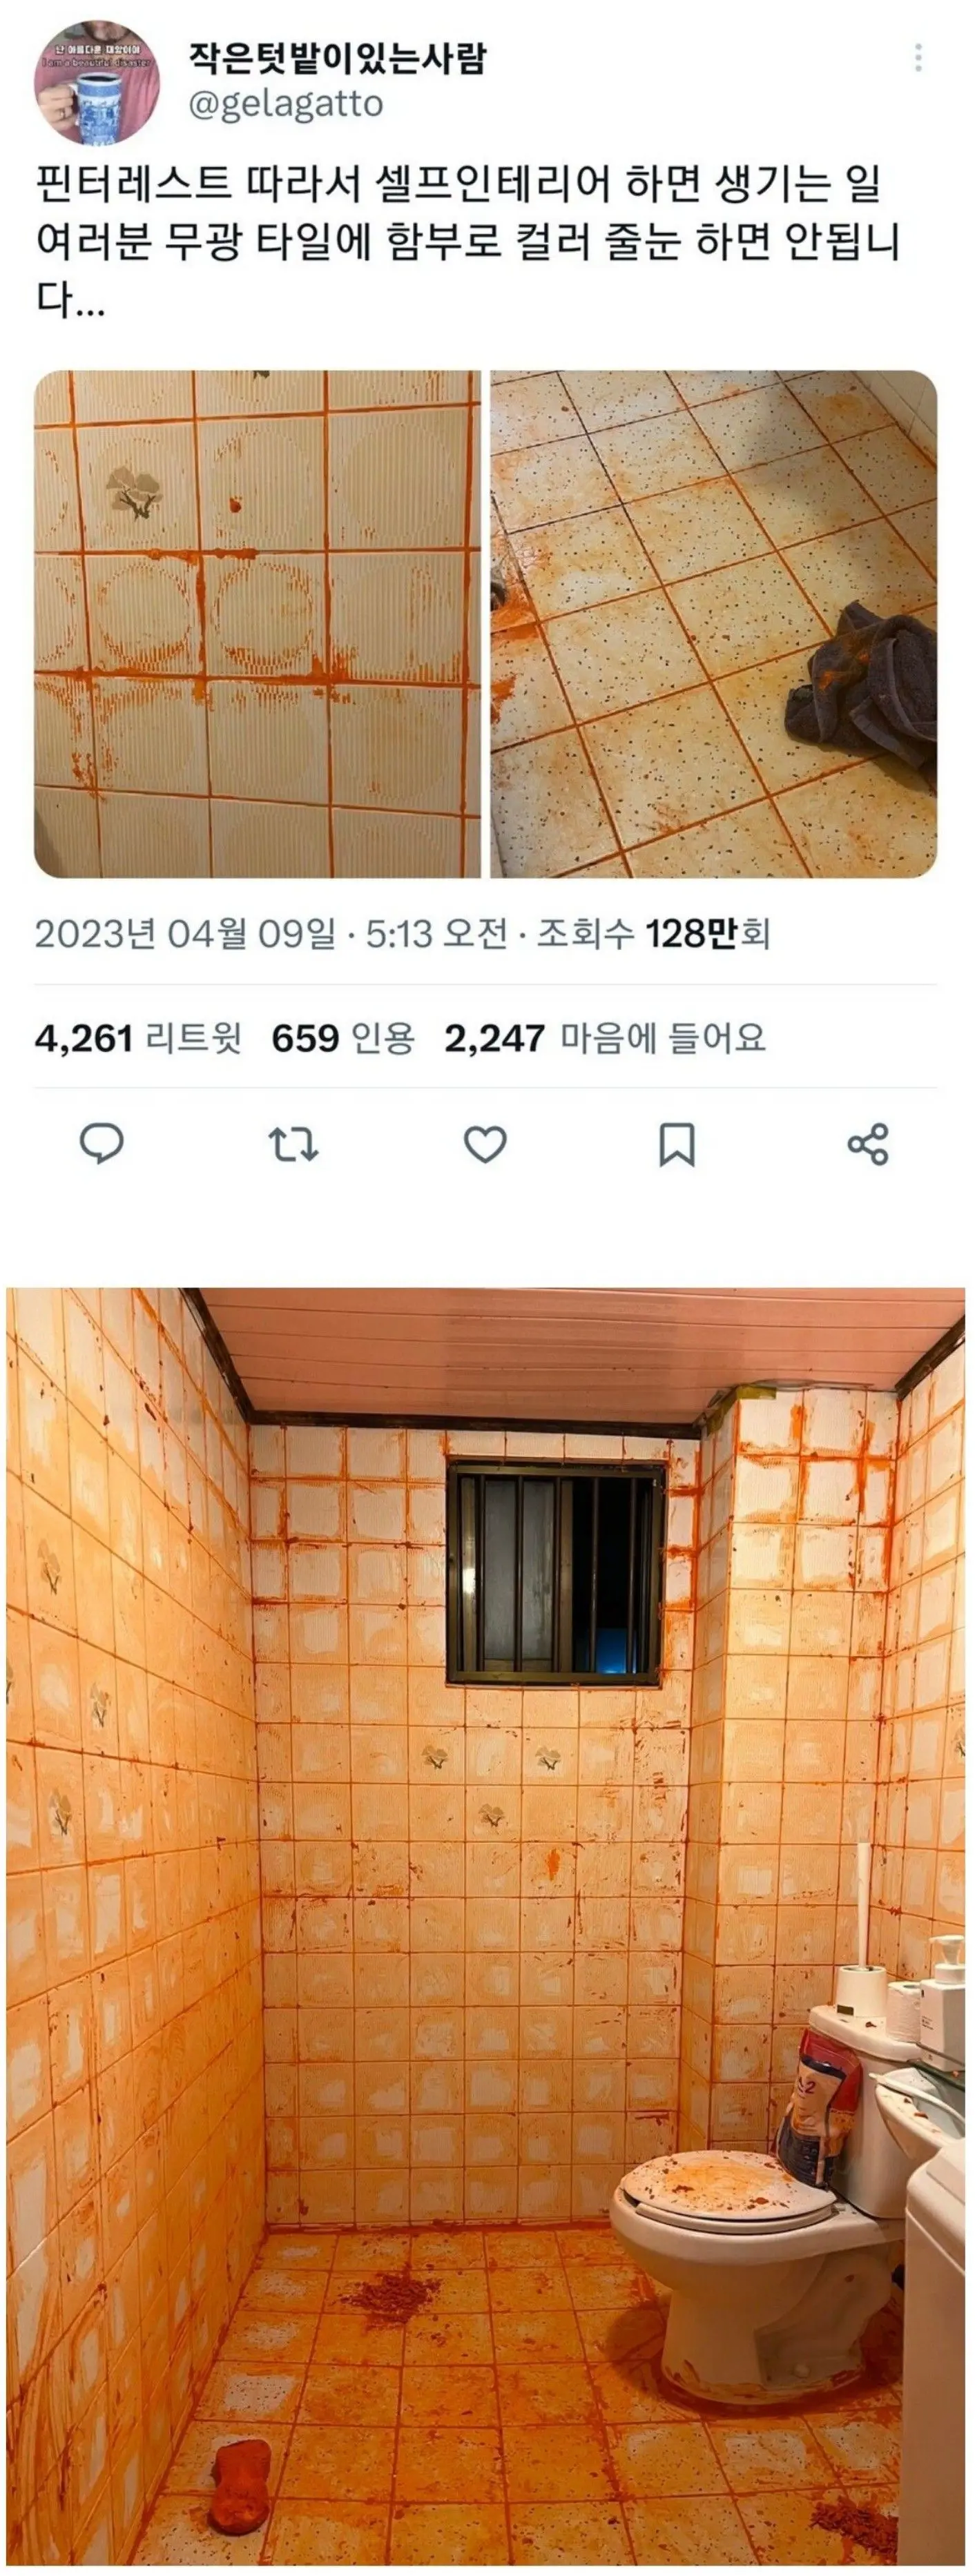 화장실 셀프 인테리어 대참사 | mbong.kr 엠봉